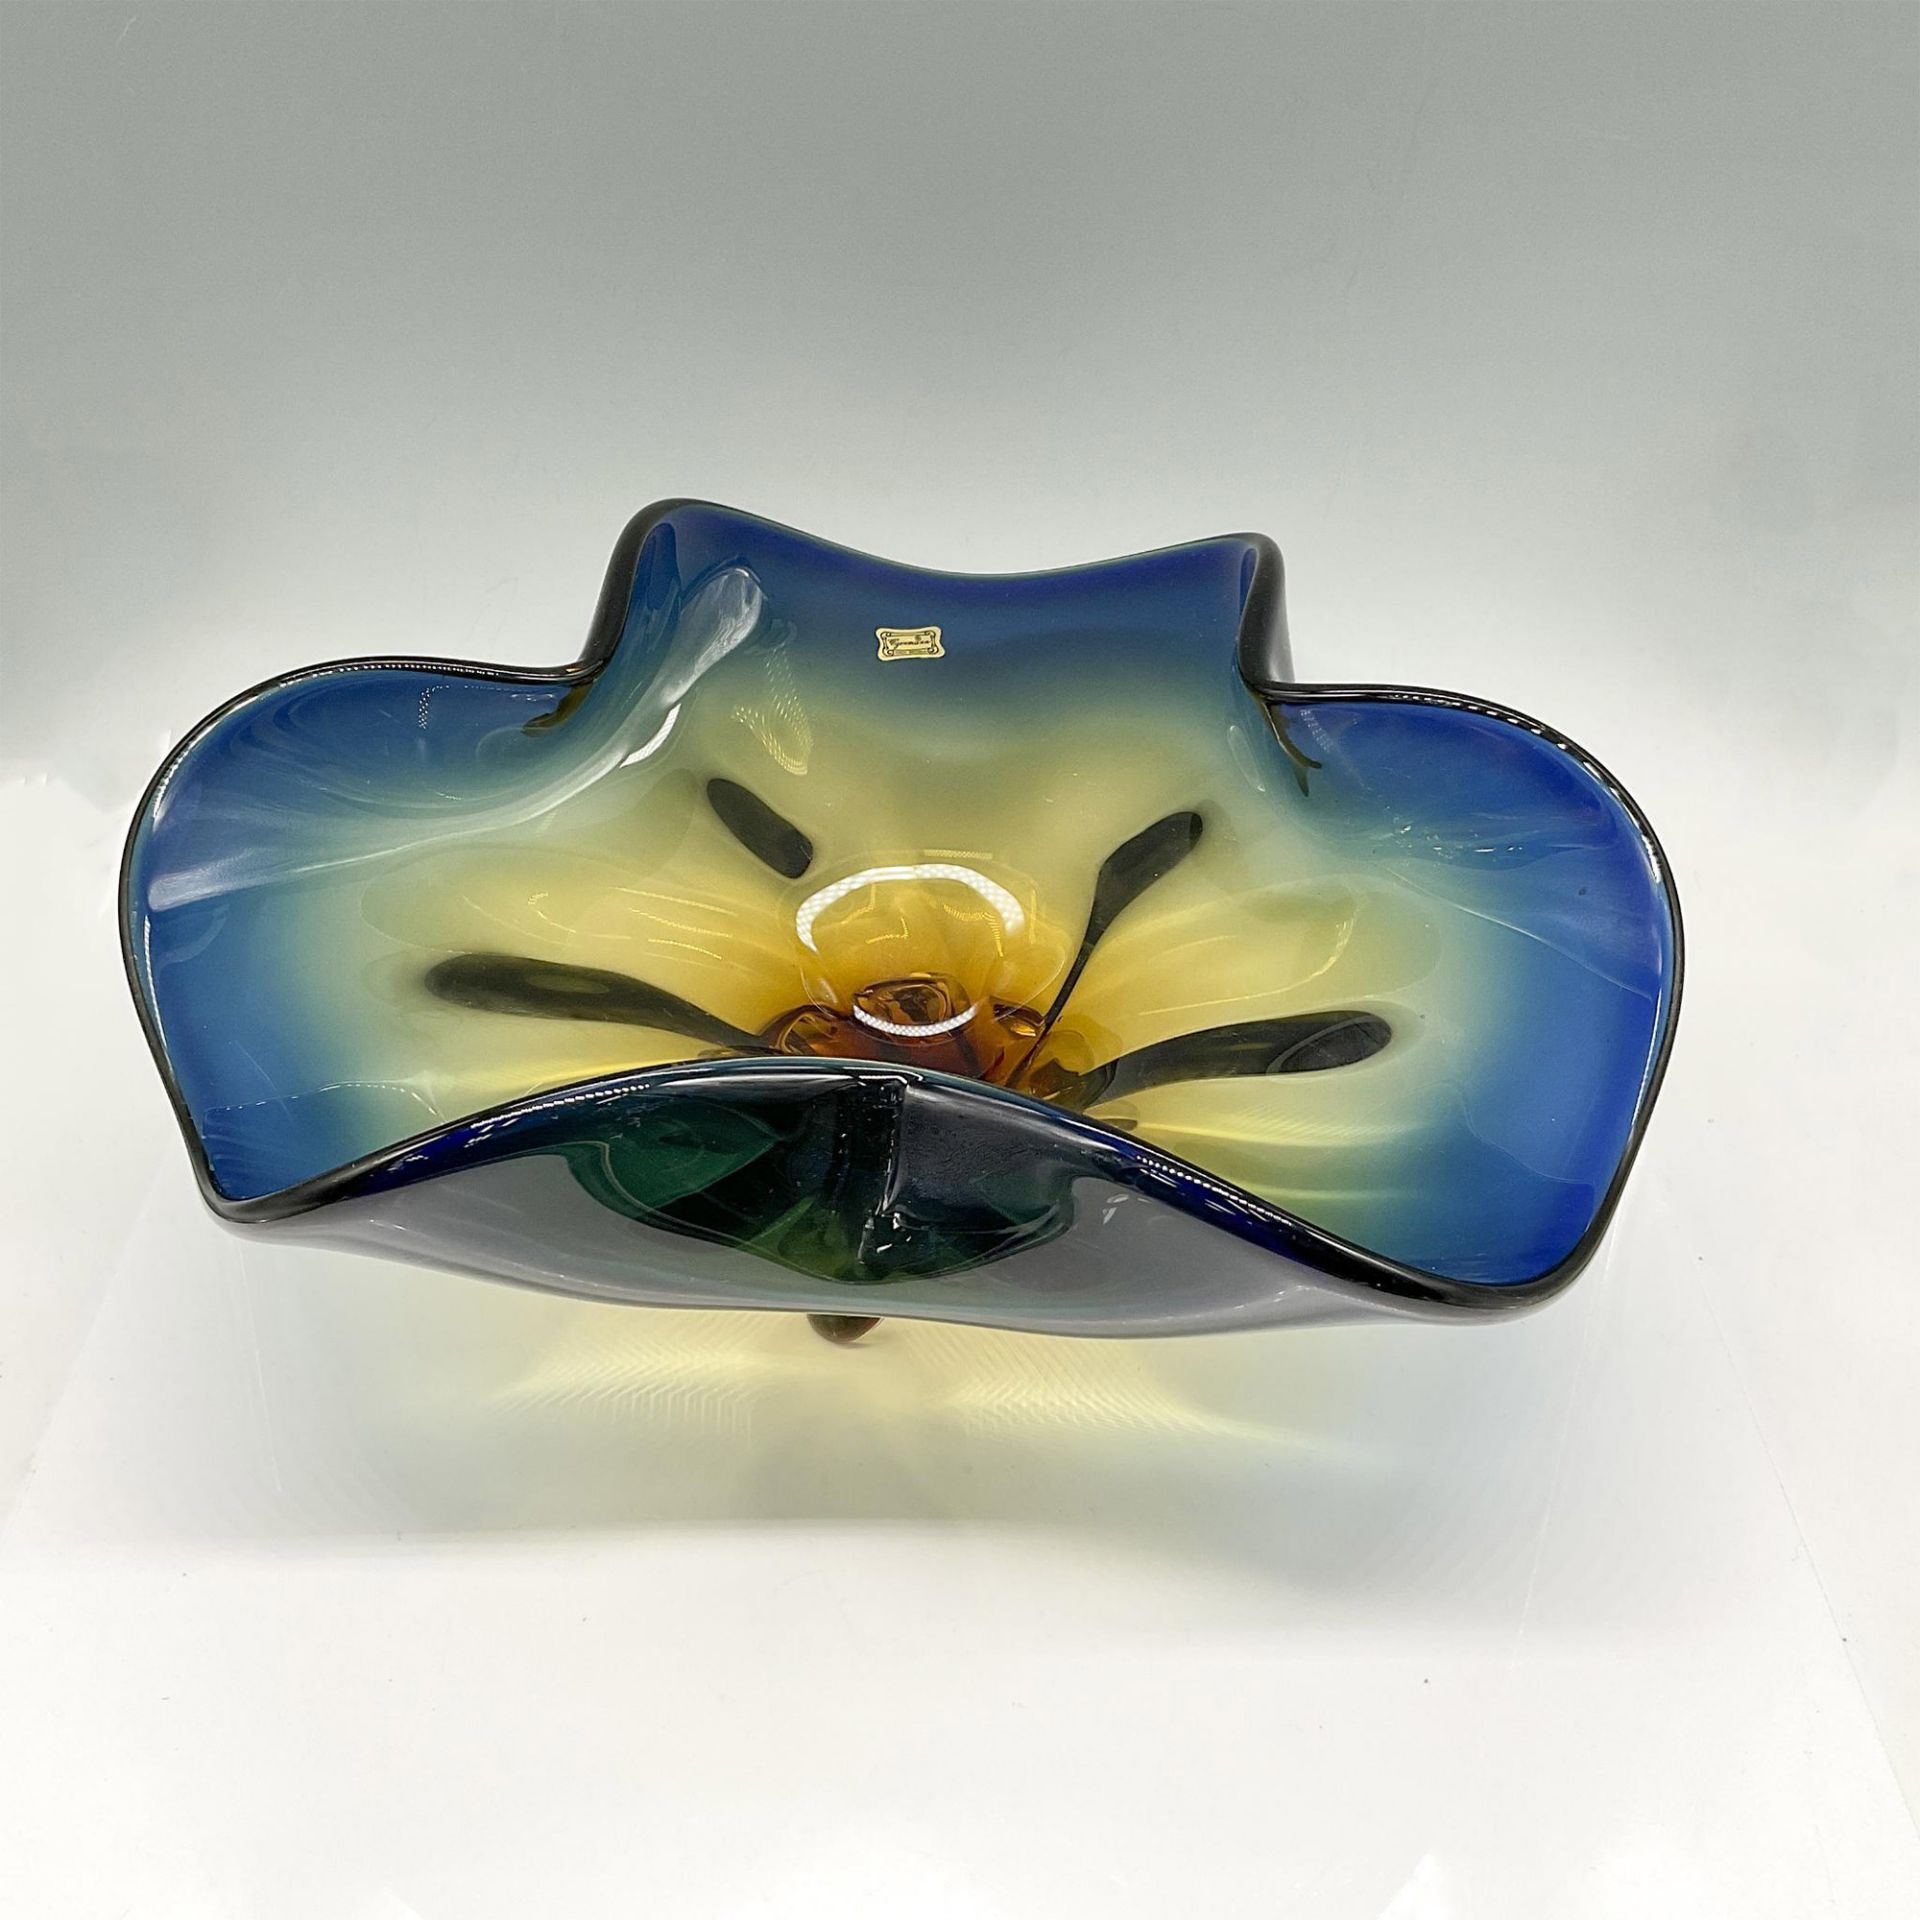 Egermann Bohemian Art Glass Centerpiece Bowl - Bild 2 aus 4